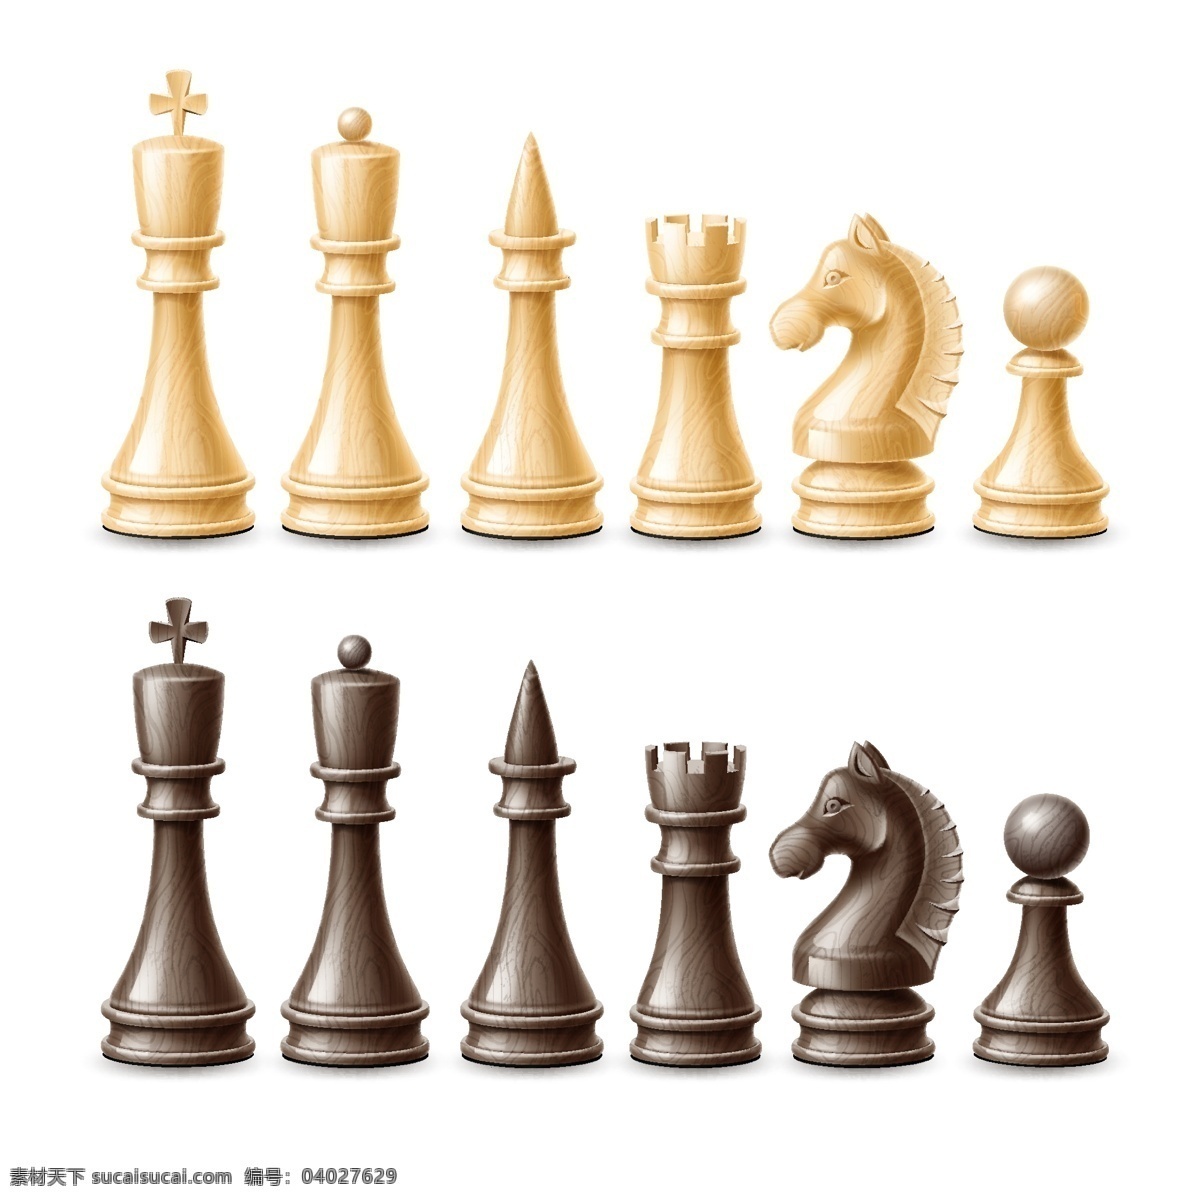 国际象棋图片 象棋 国际象棋 棋盘 旗子 企业文化 品牌 休闲娱乐 对弈 博弈 团队合作